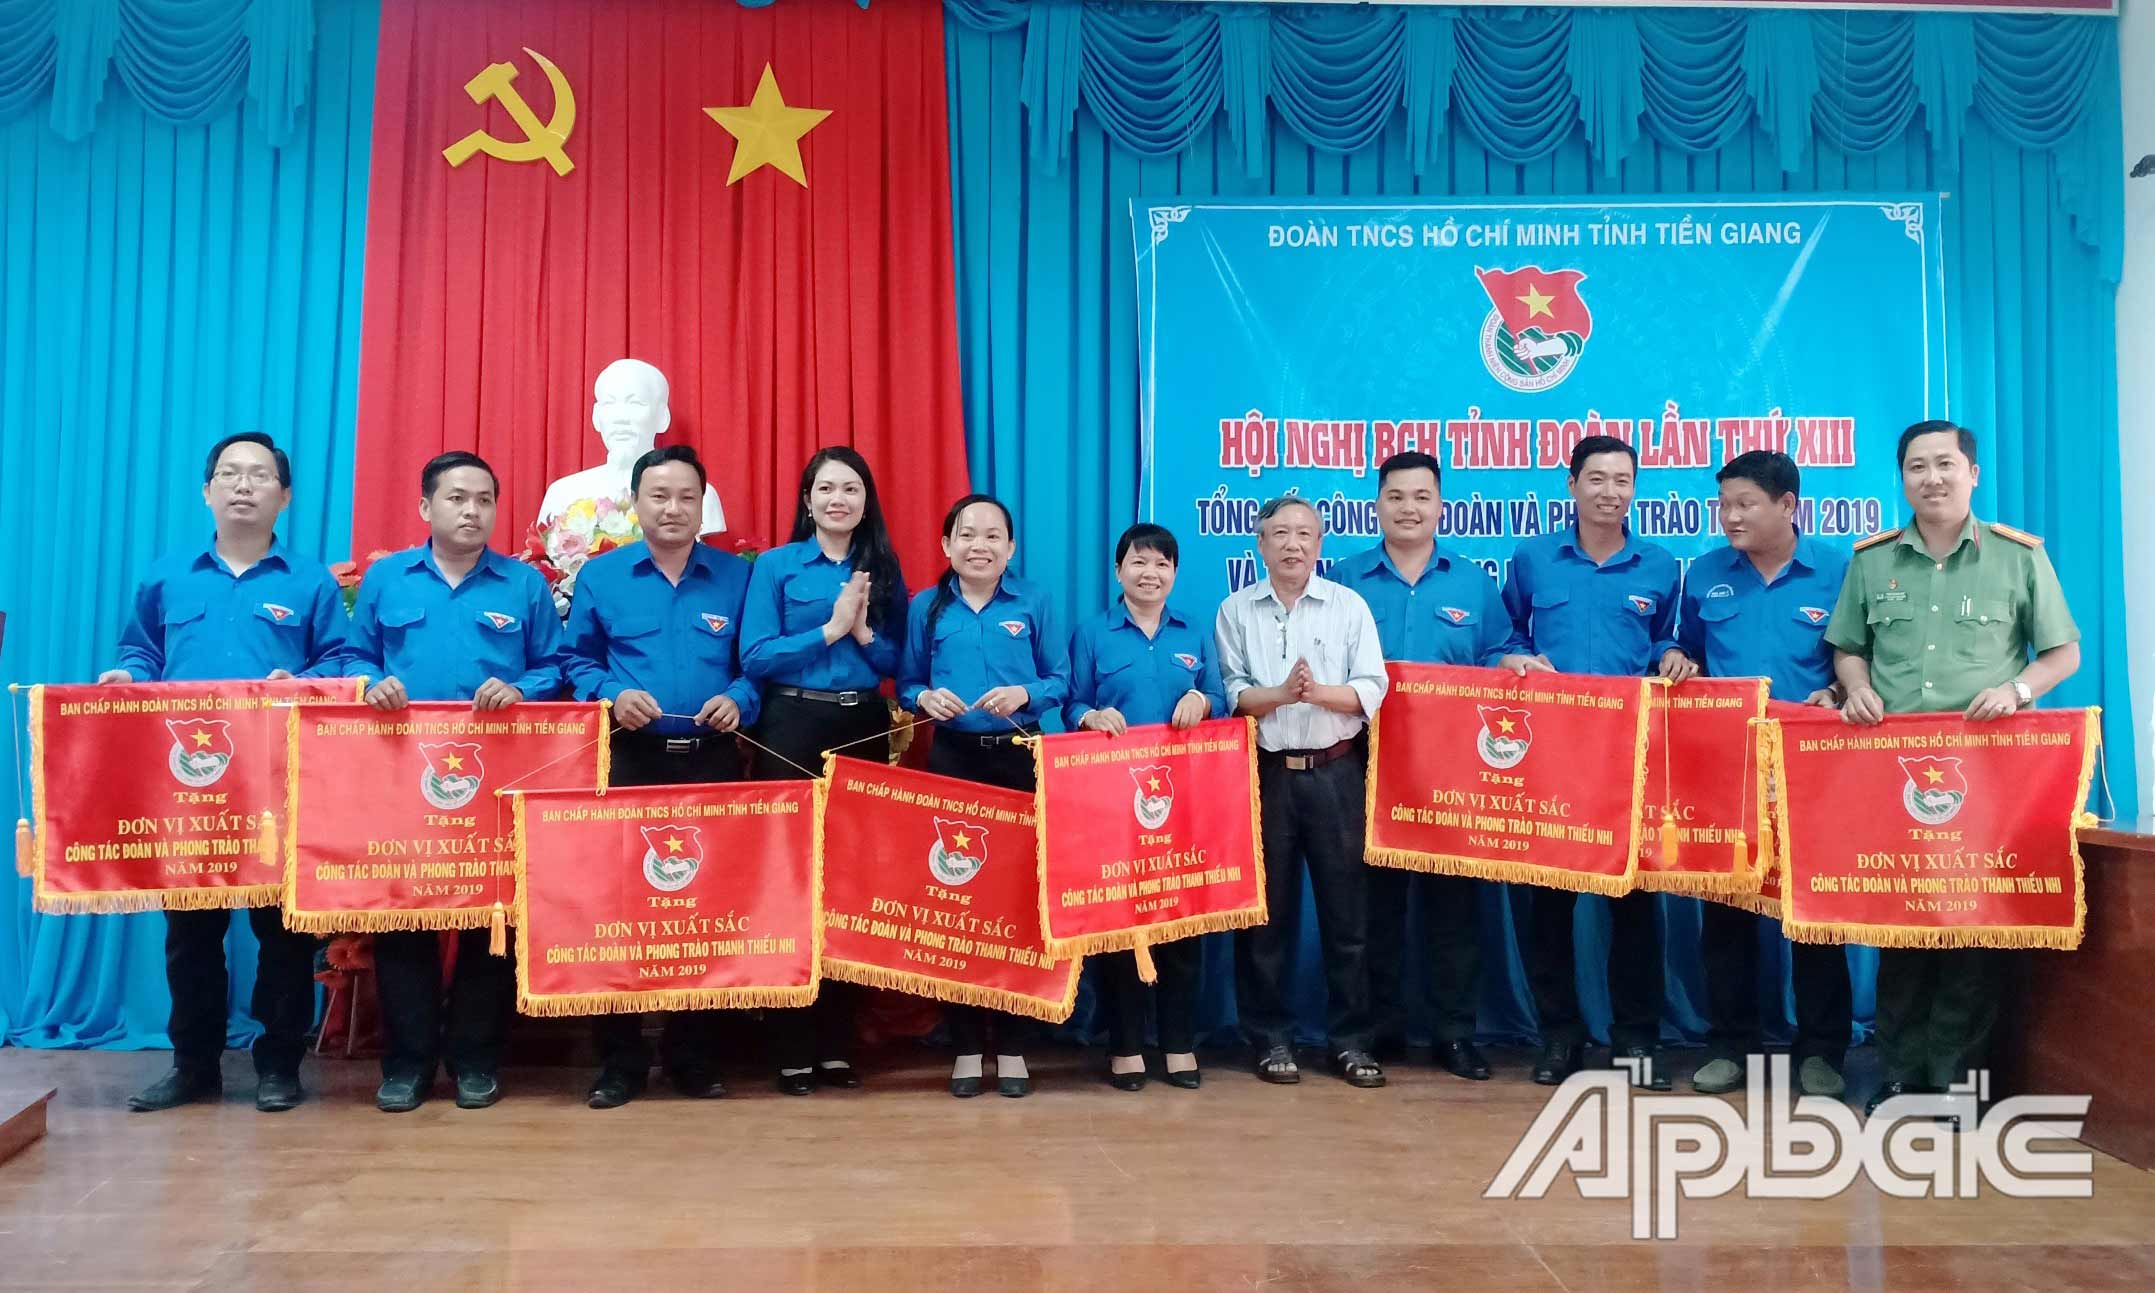 Đồng chí Nguyễn Thị Uyên Trang trao Cờ thi đua xuất sắc cho các đơn vị tại Hội nghị tổng kết công tác Đoàn và phong trào thanh thiếu nhi năm 2019.                                                                                                                                              Ảnh: QUỐC TRUNG